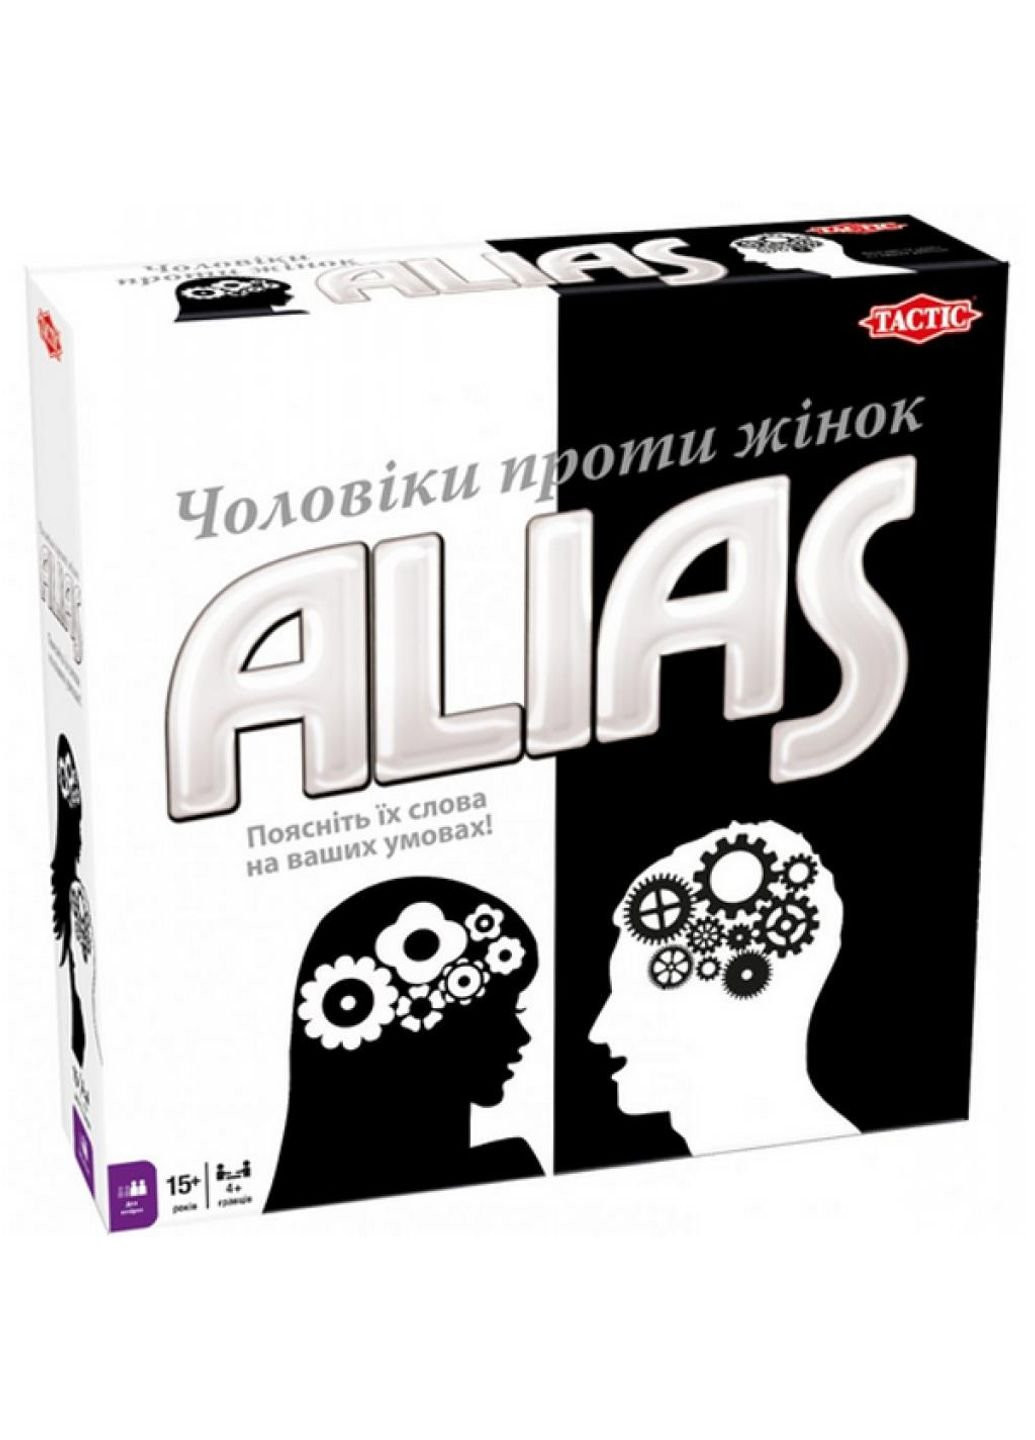 Настольная игра Элиас Мужчины против женщин украинский язык (54338) Tactic (249609407)